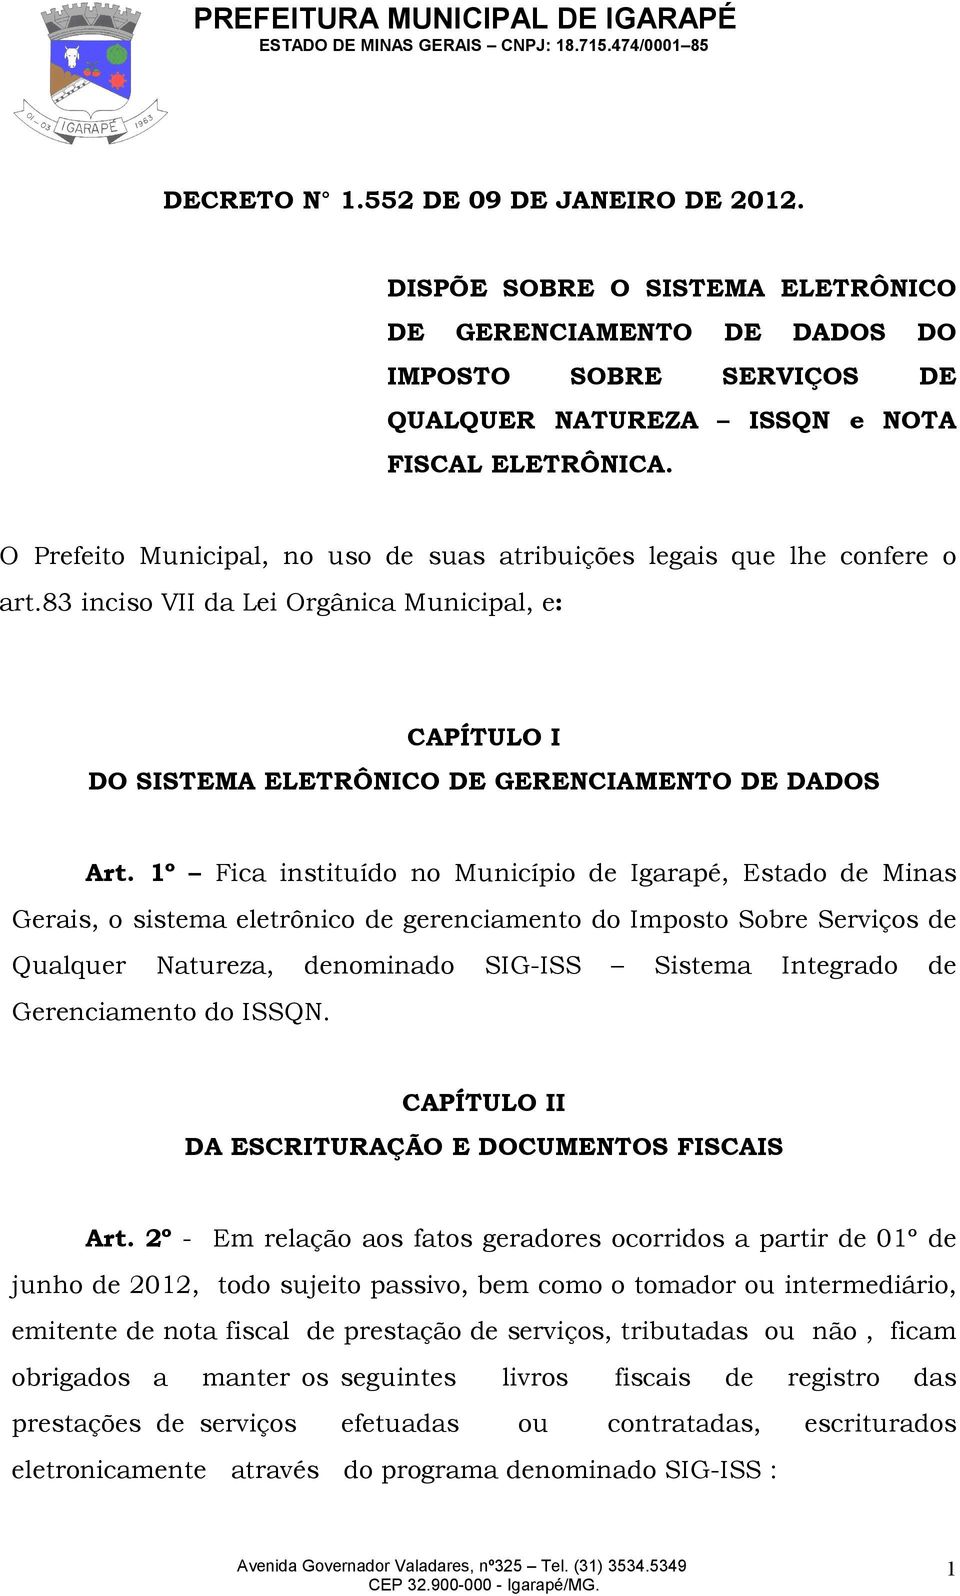 1º Fica instituído no Município de Igarapé, Estado de Minas Gerais, o sistema eletrônico de gerenciamento do Imposto Sobre Serviços de Qualquer Natureza, denominado SIG-ISS Sistema Integrado de